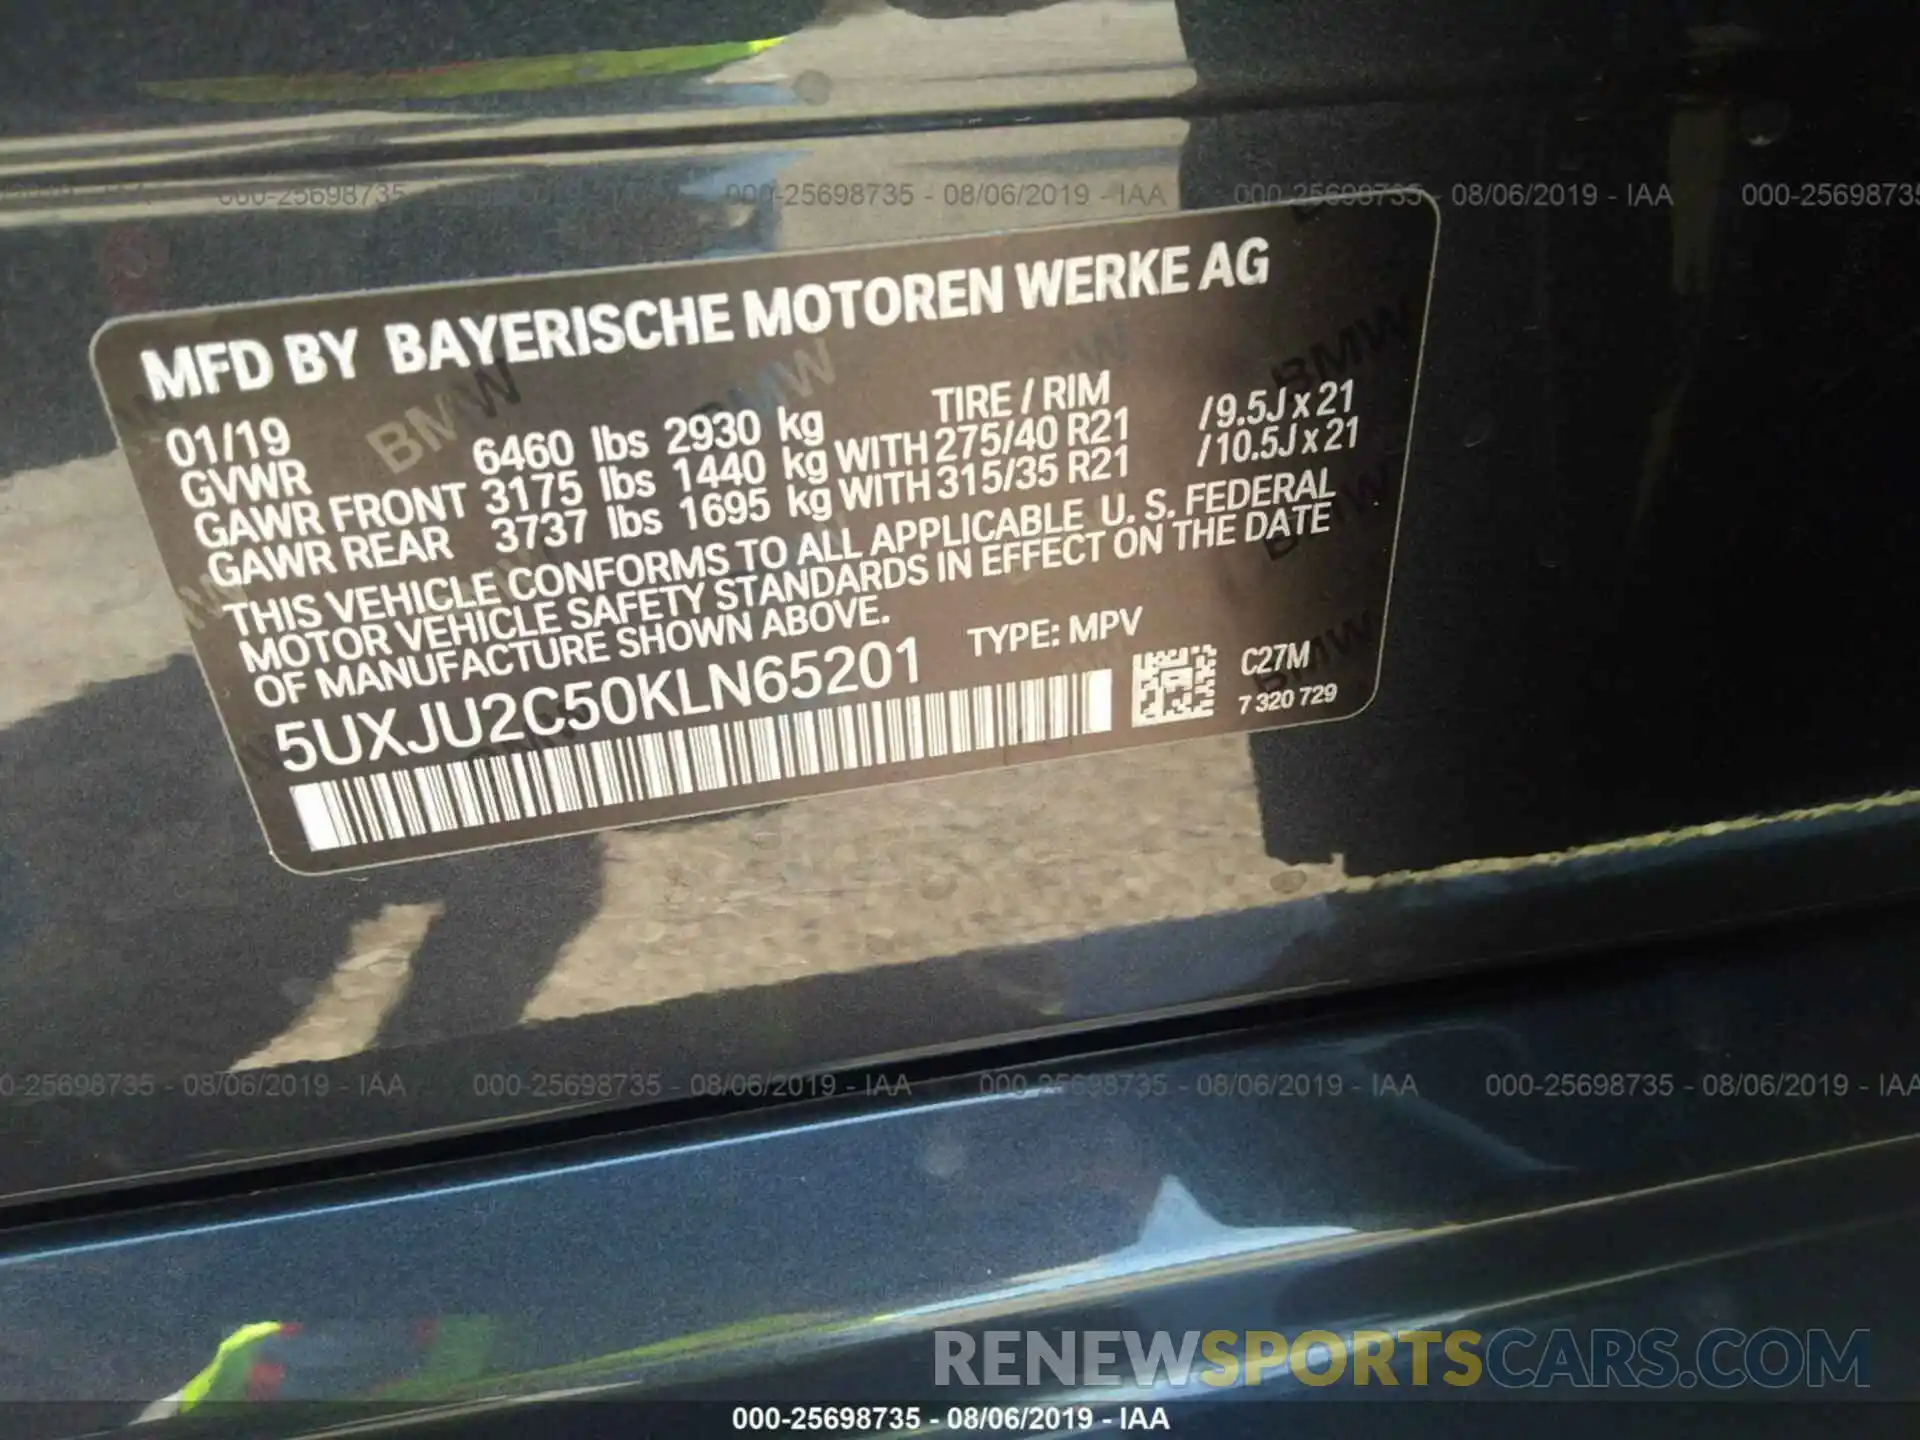 9 Photograph of a damaged car 5UXJU2C50KLN65201 BMW X5 2019